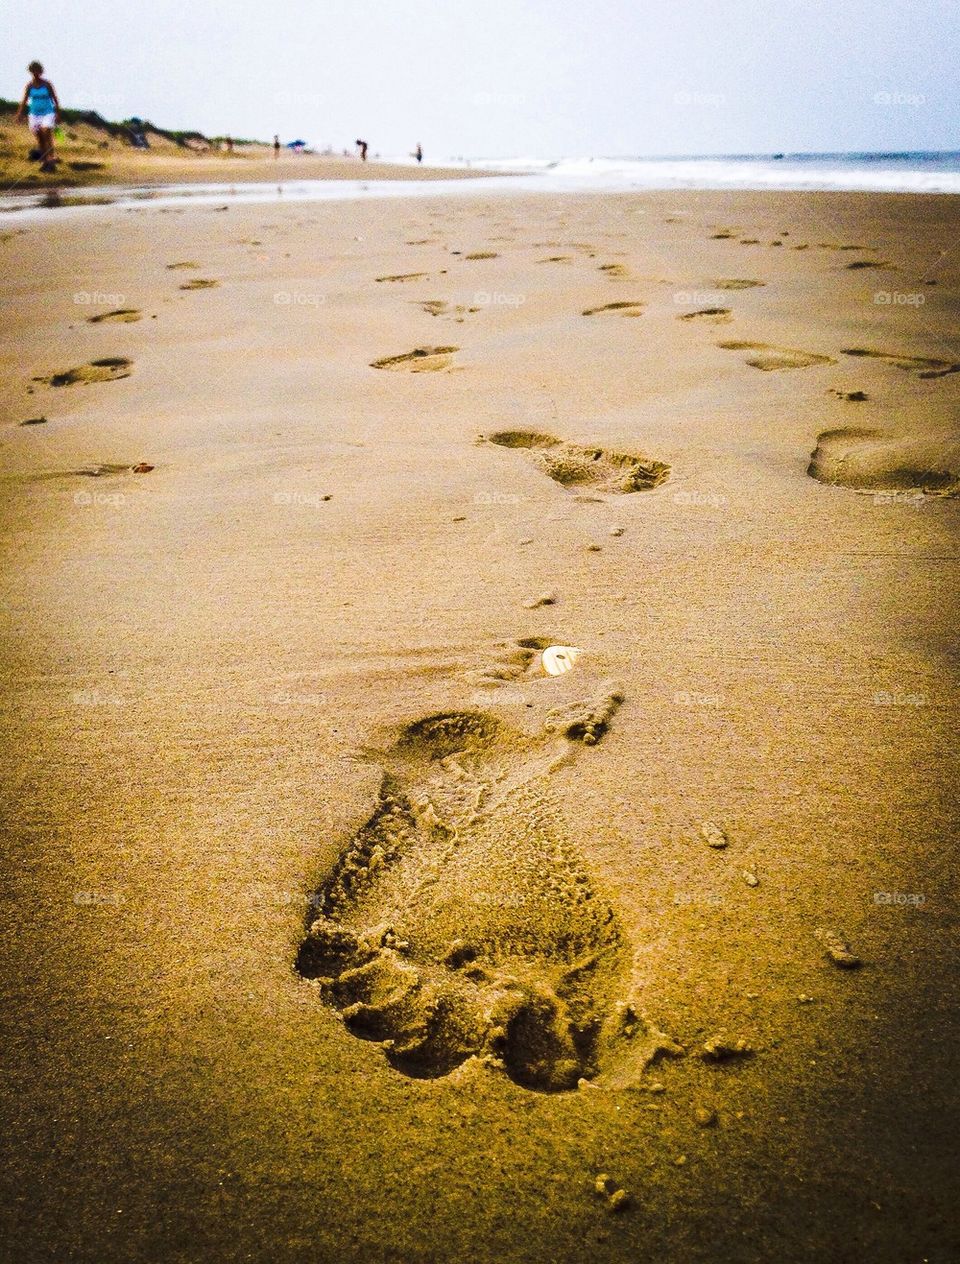 Footprint on sand at beach